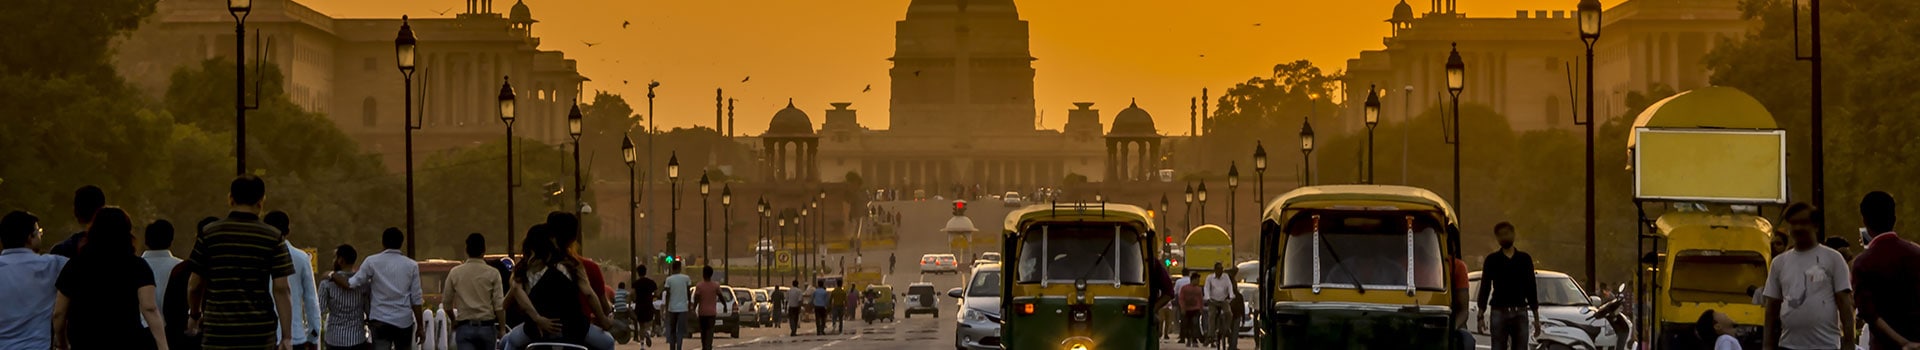 Mumbai - Delhi